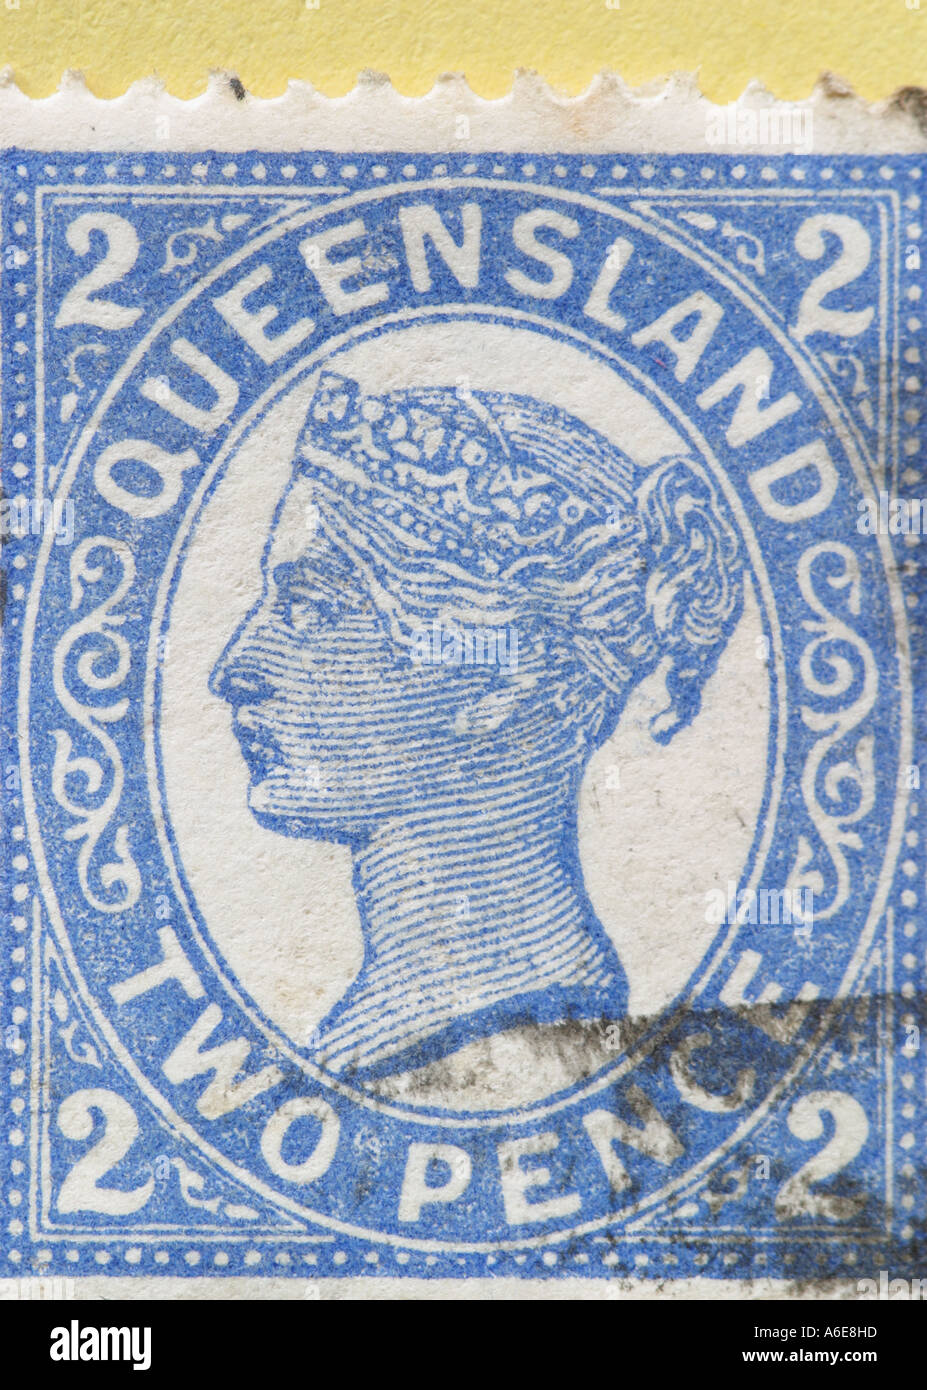 Königin Victoria Stempel aus dem australischen Bundesstaat Queensland Stockfoto